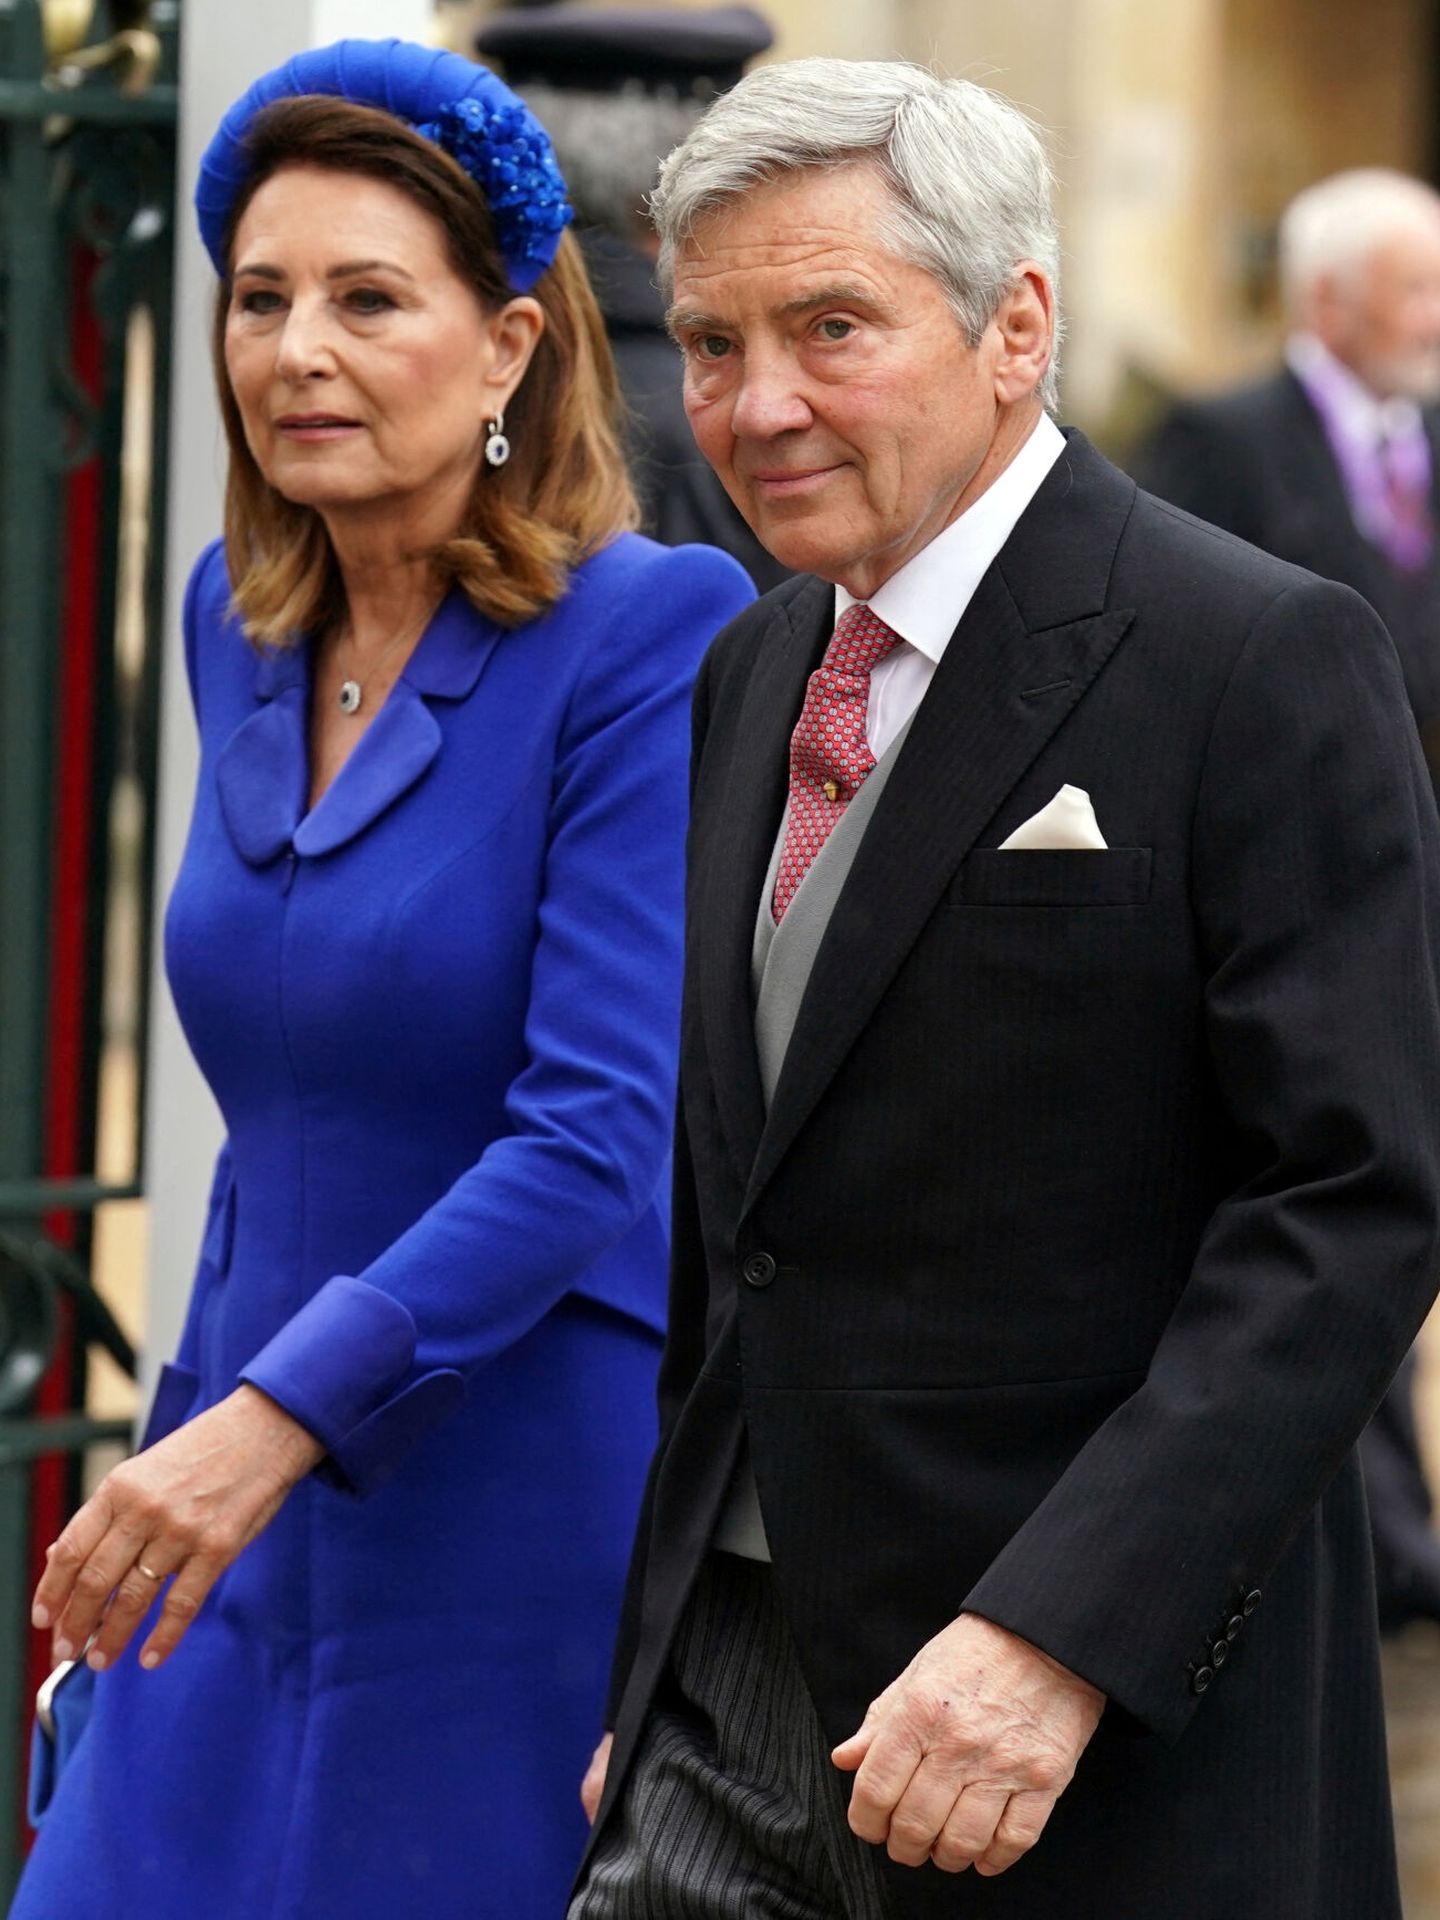 El matrimonio Middleton, en la coronación de Carlos III. (Reuters/Andrew Milligan)